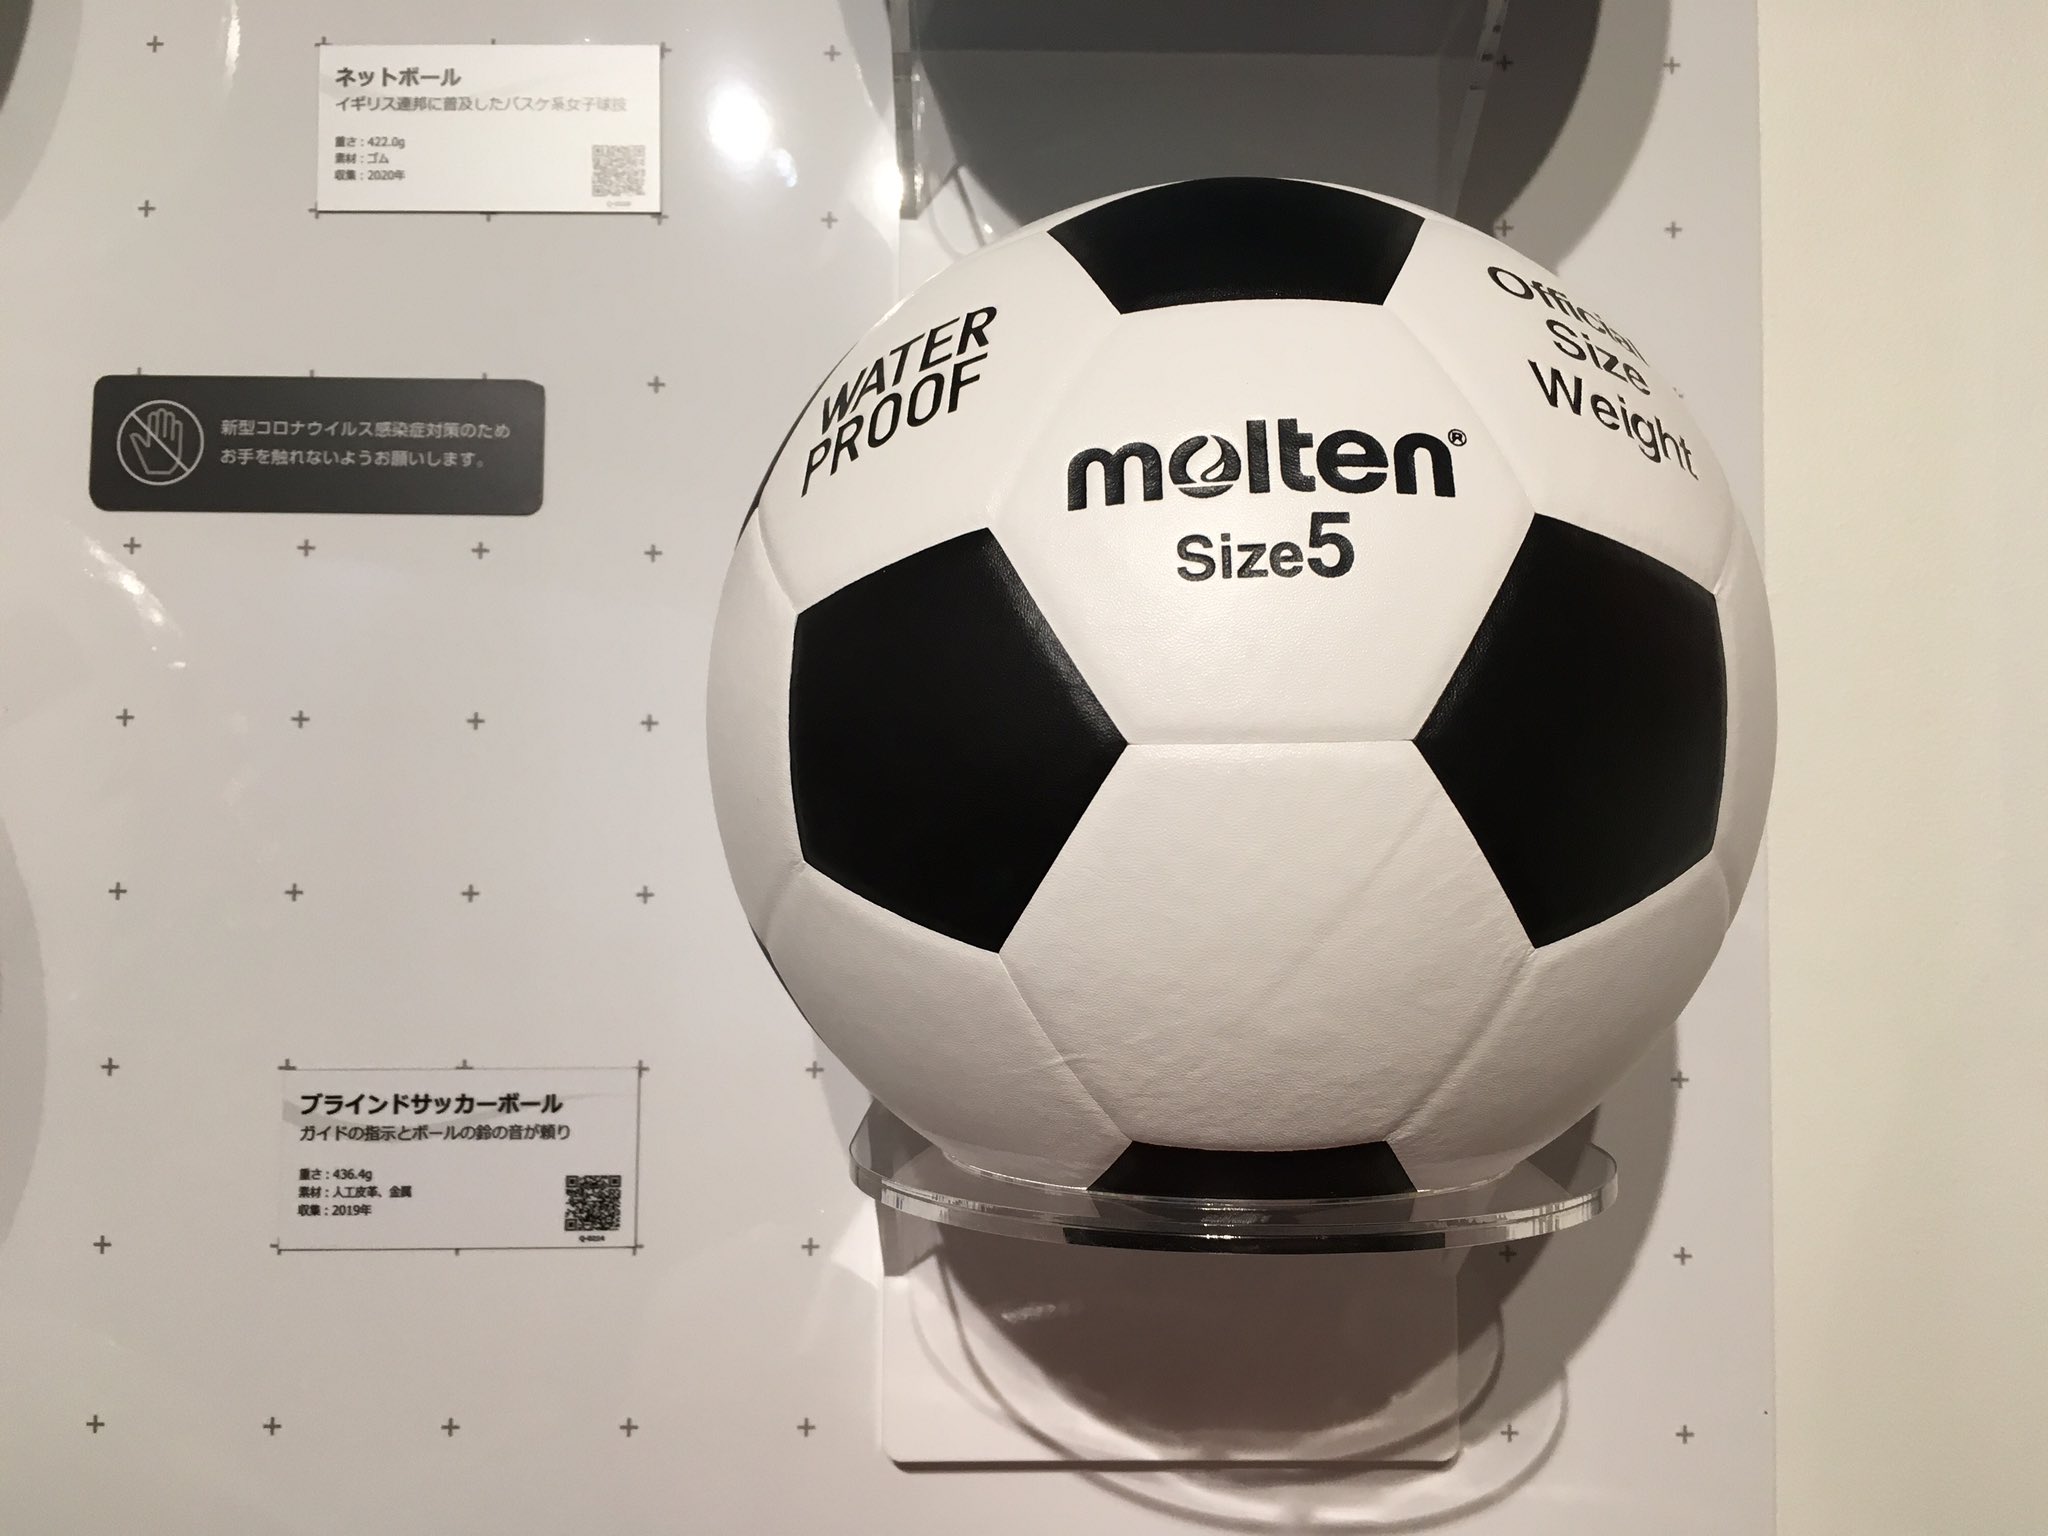 中京大学スポーツミュージアム こんにちは 今回はこちらのブラインドサッカーボールを紹介します 東京パラリンピックで ブラインドサッカーを見た方も多いのではないでしょうか 現在の企画展の開催期限が近づいて来ているので 皆さんお早めに